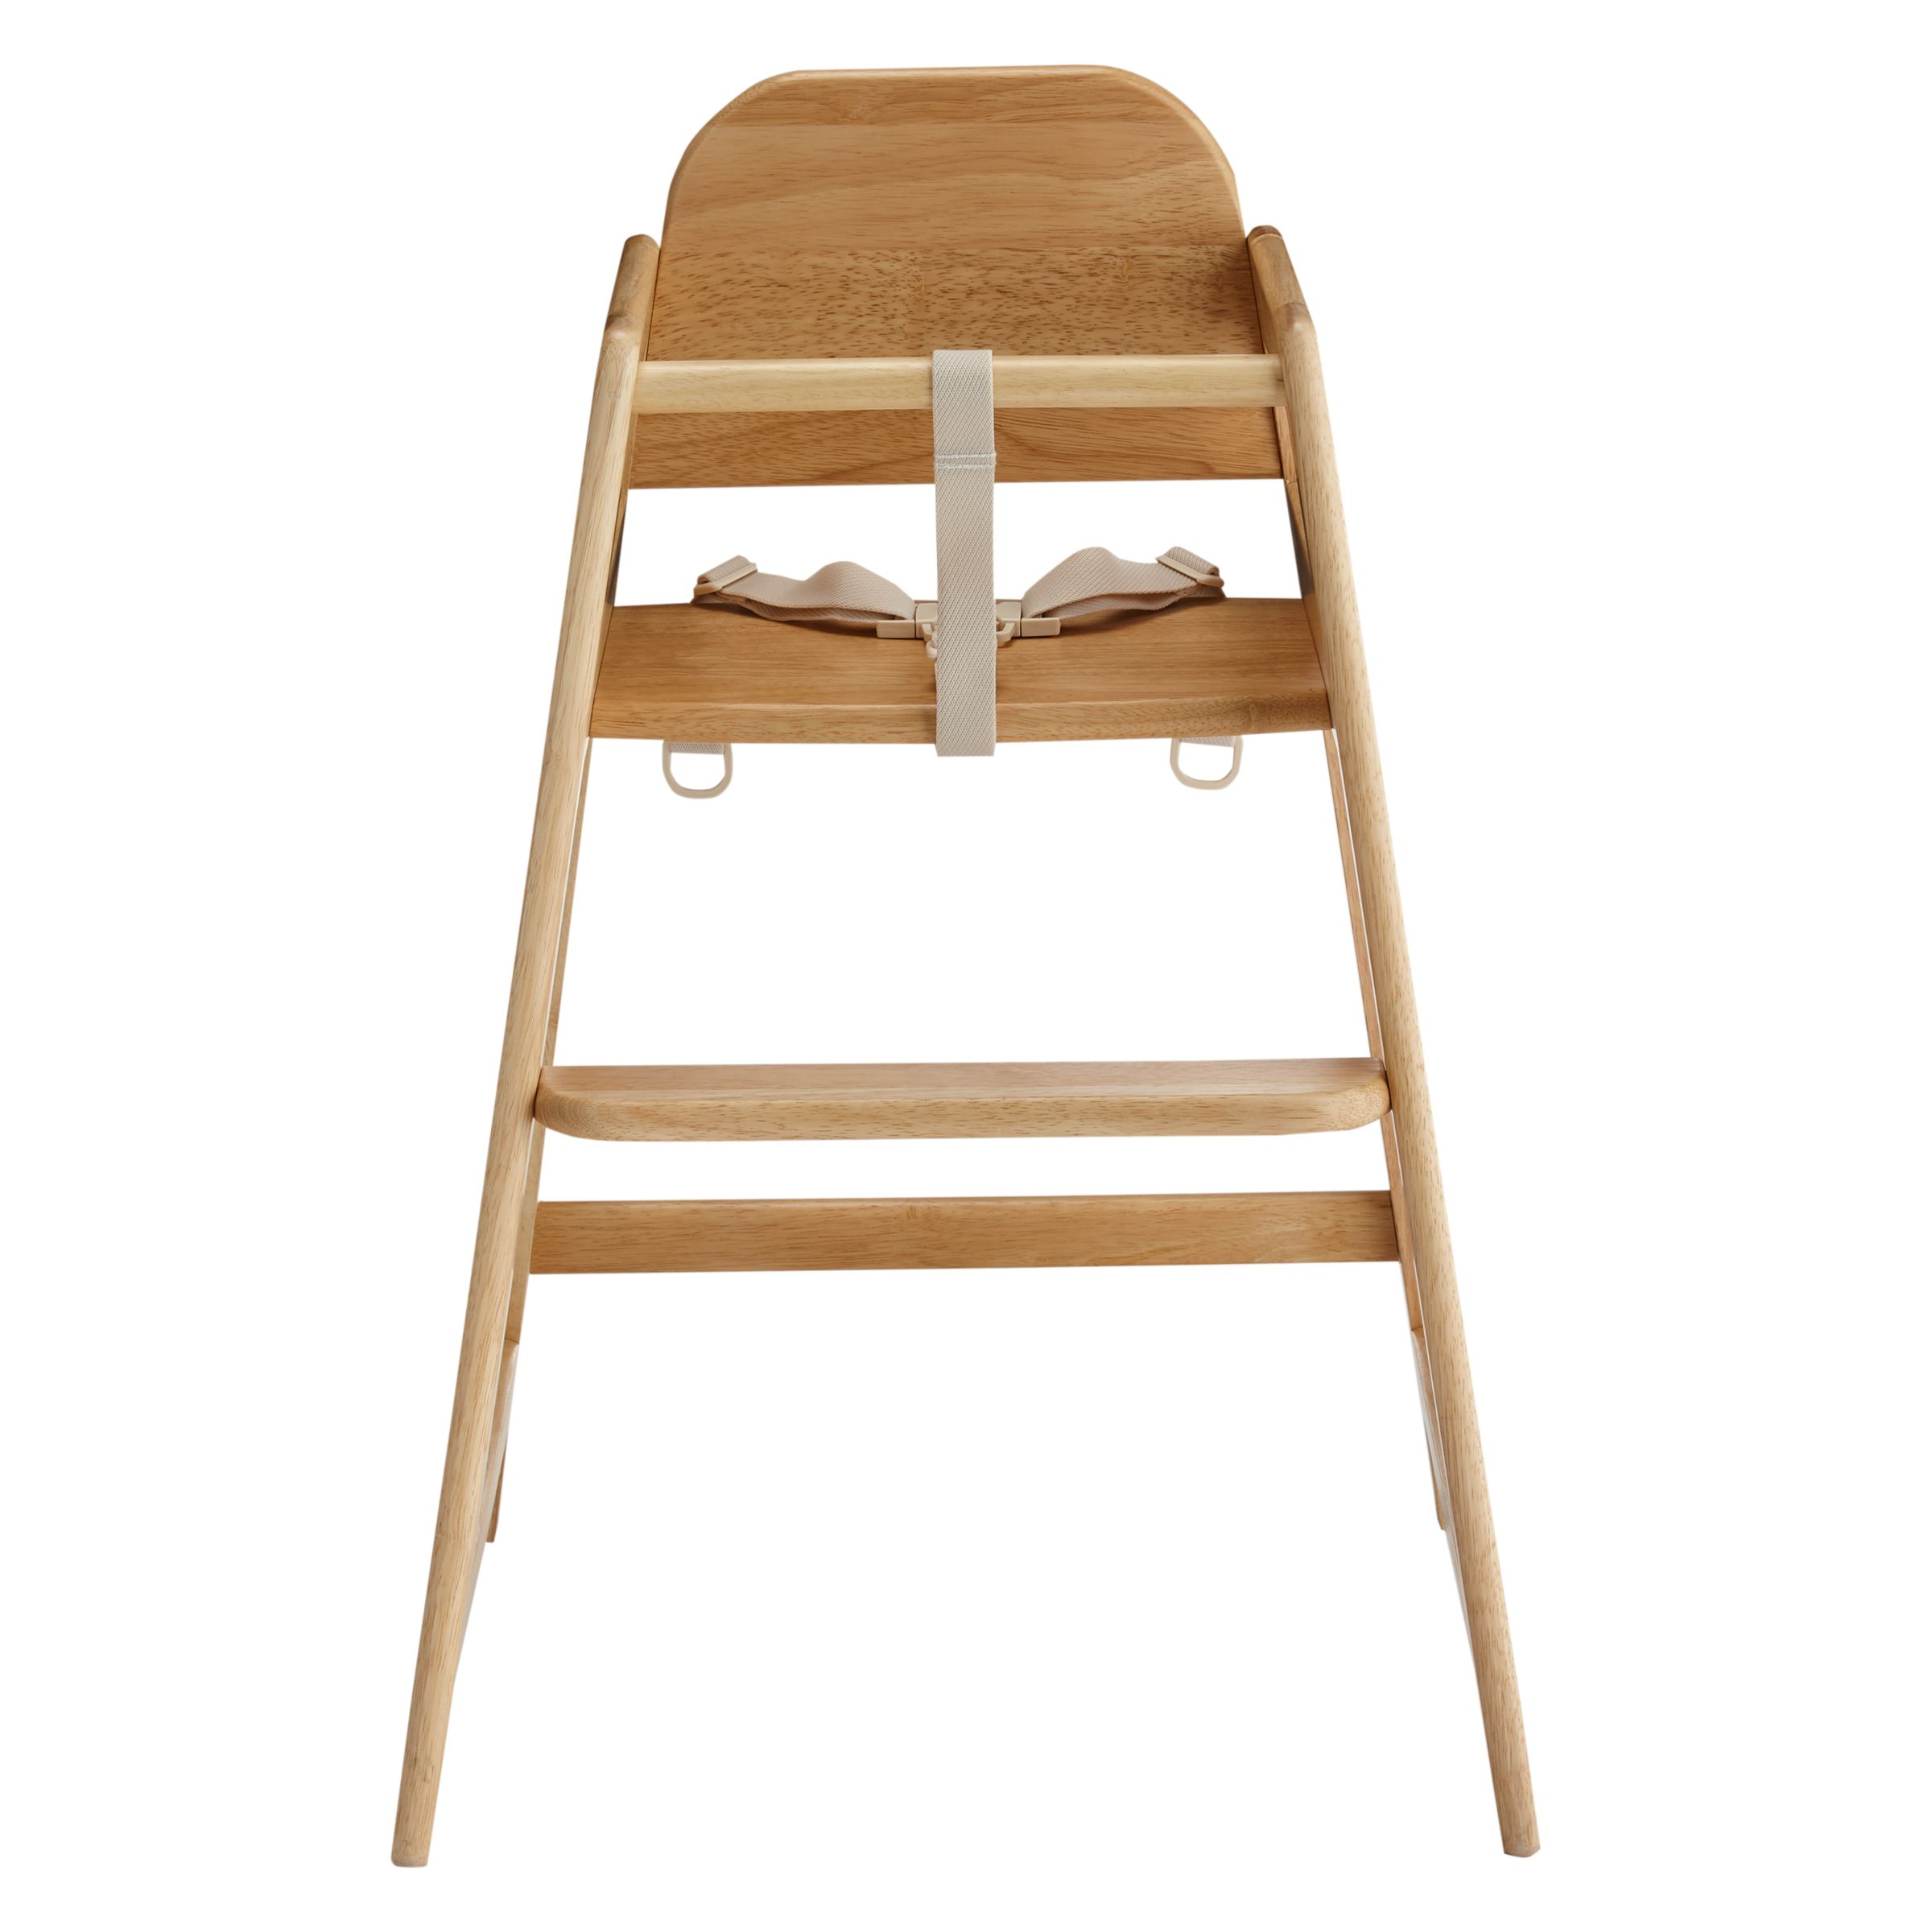 john lewis wooden high chair